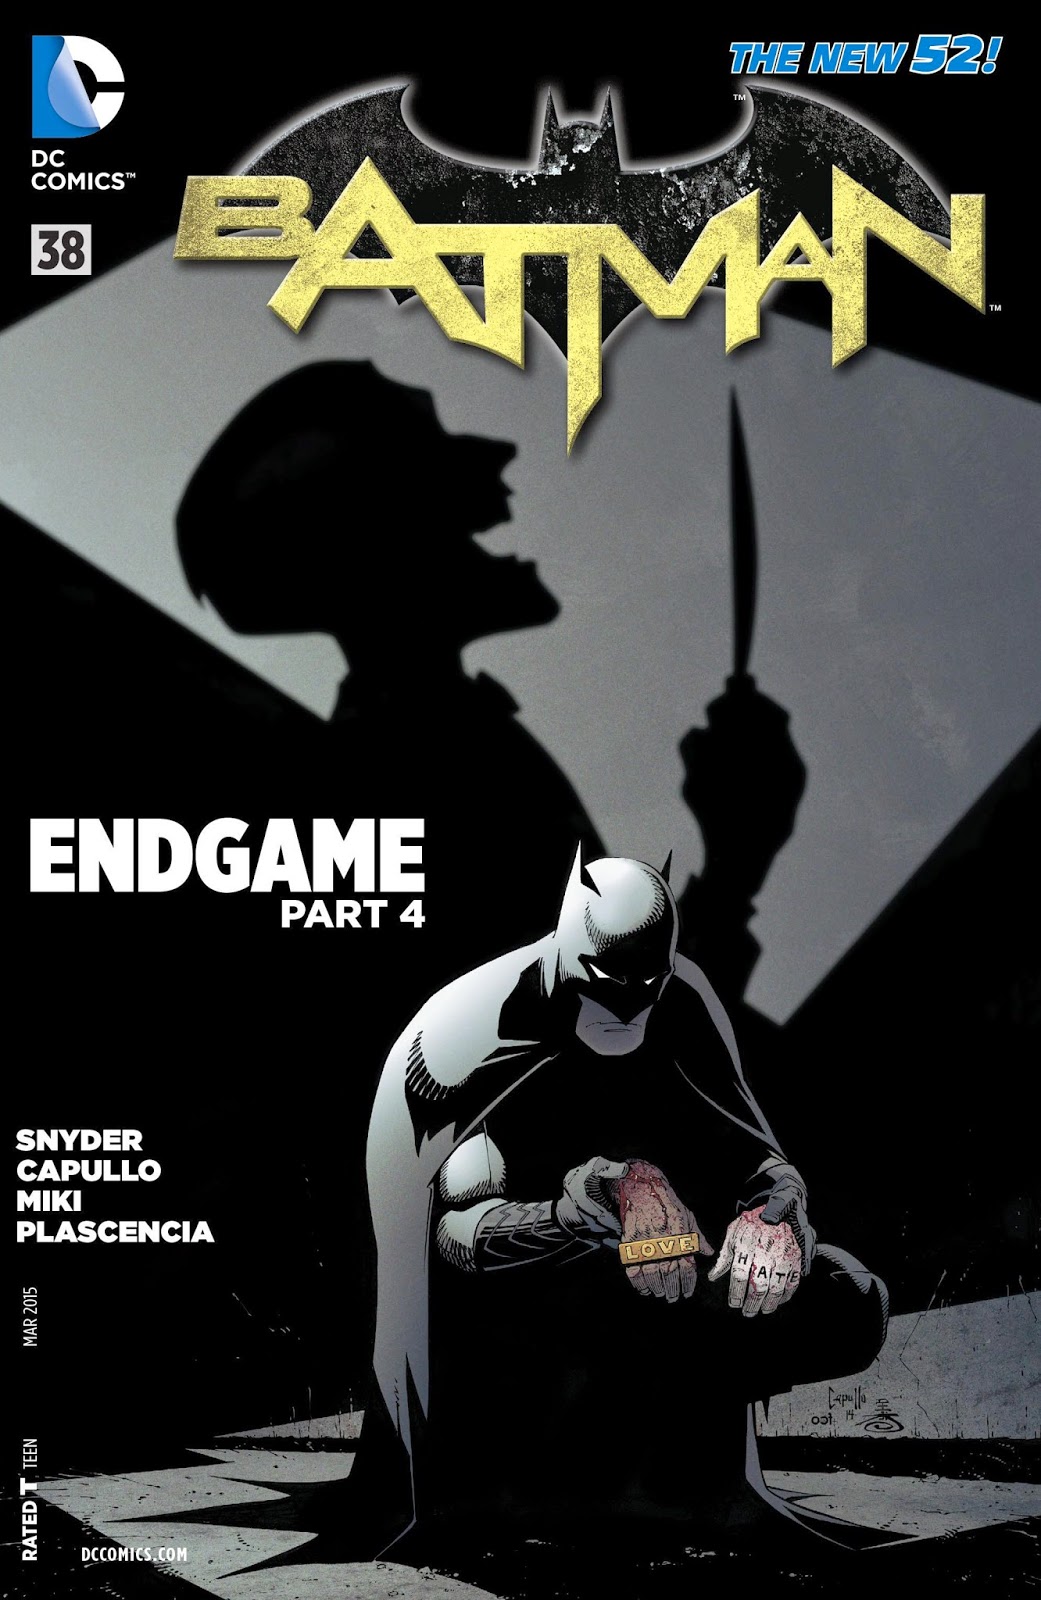 Reseña: “Batman” #38 - “Endgame”, parte cuatro